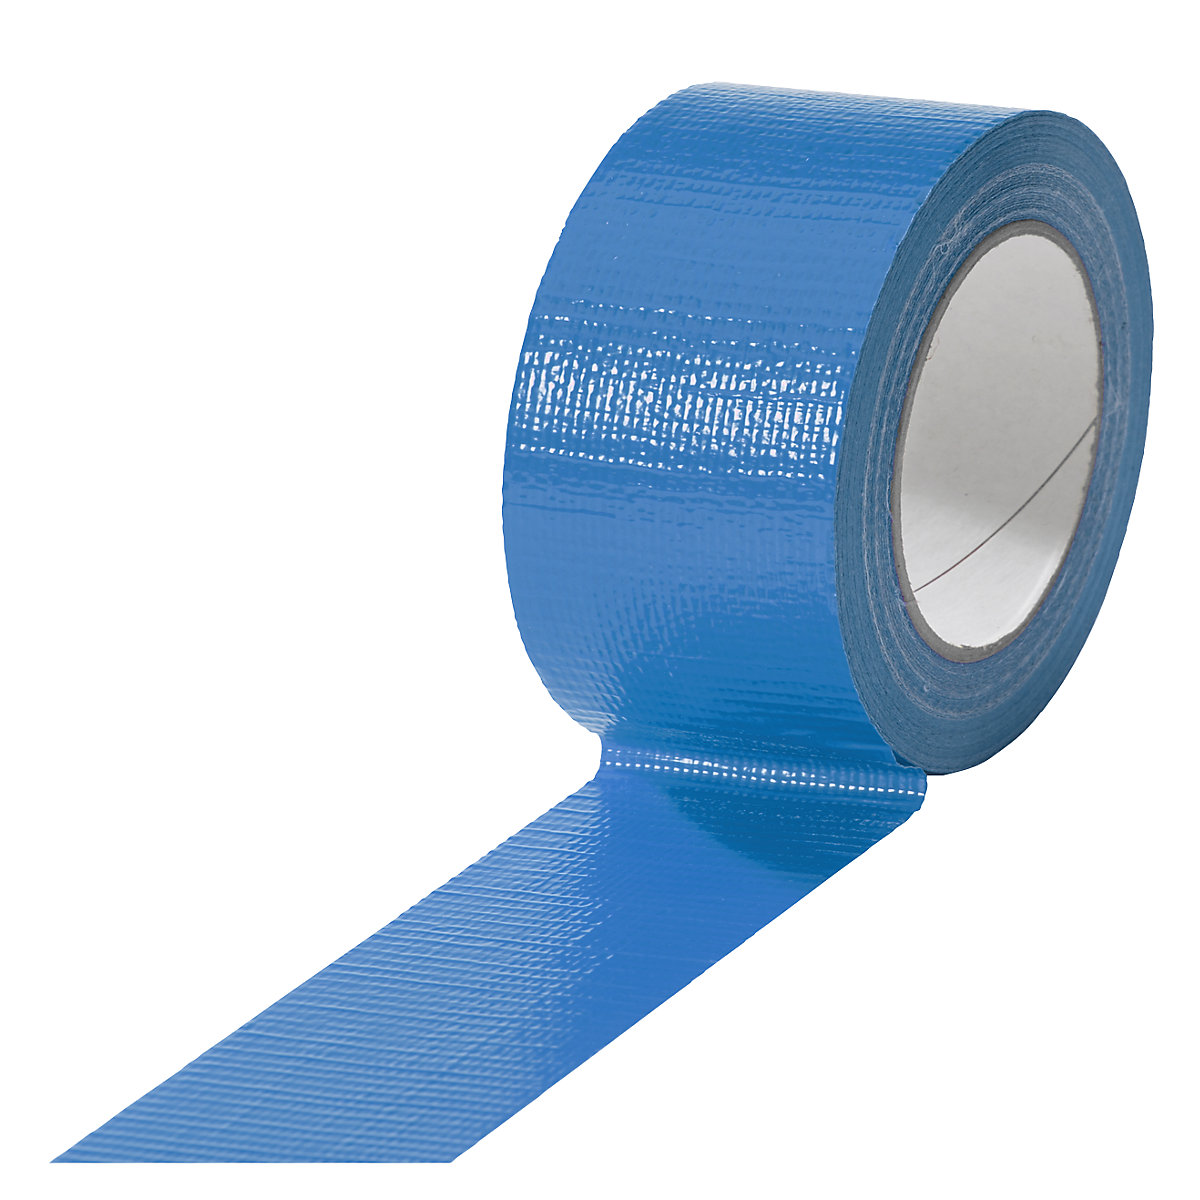 Cinta de tejido, en diferentes colores, UE 18 rollos, azul, anchura de cinta 50 mm-1